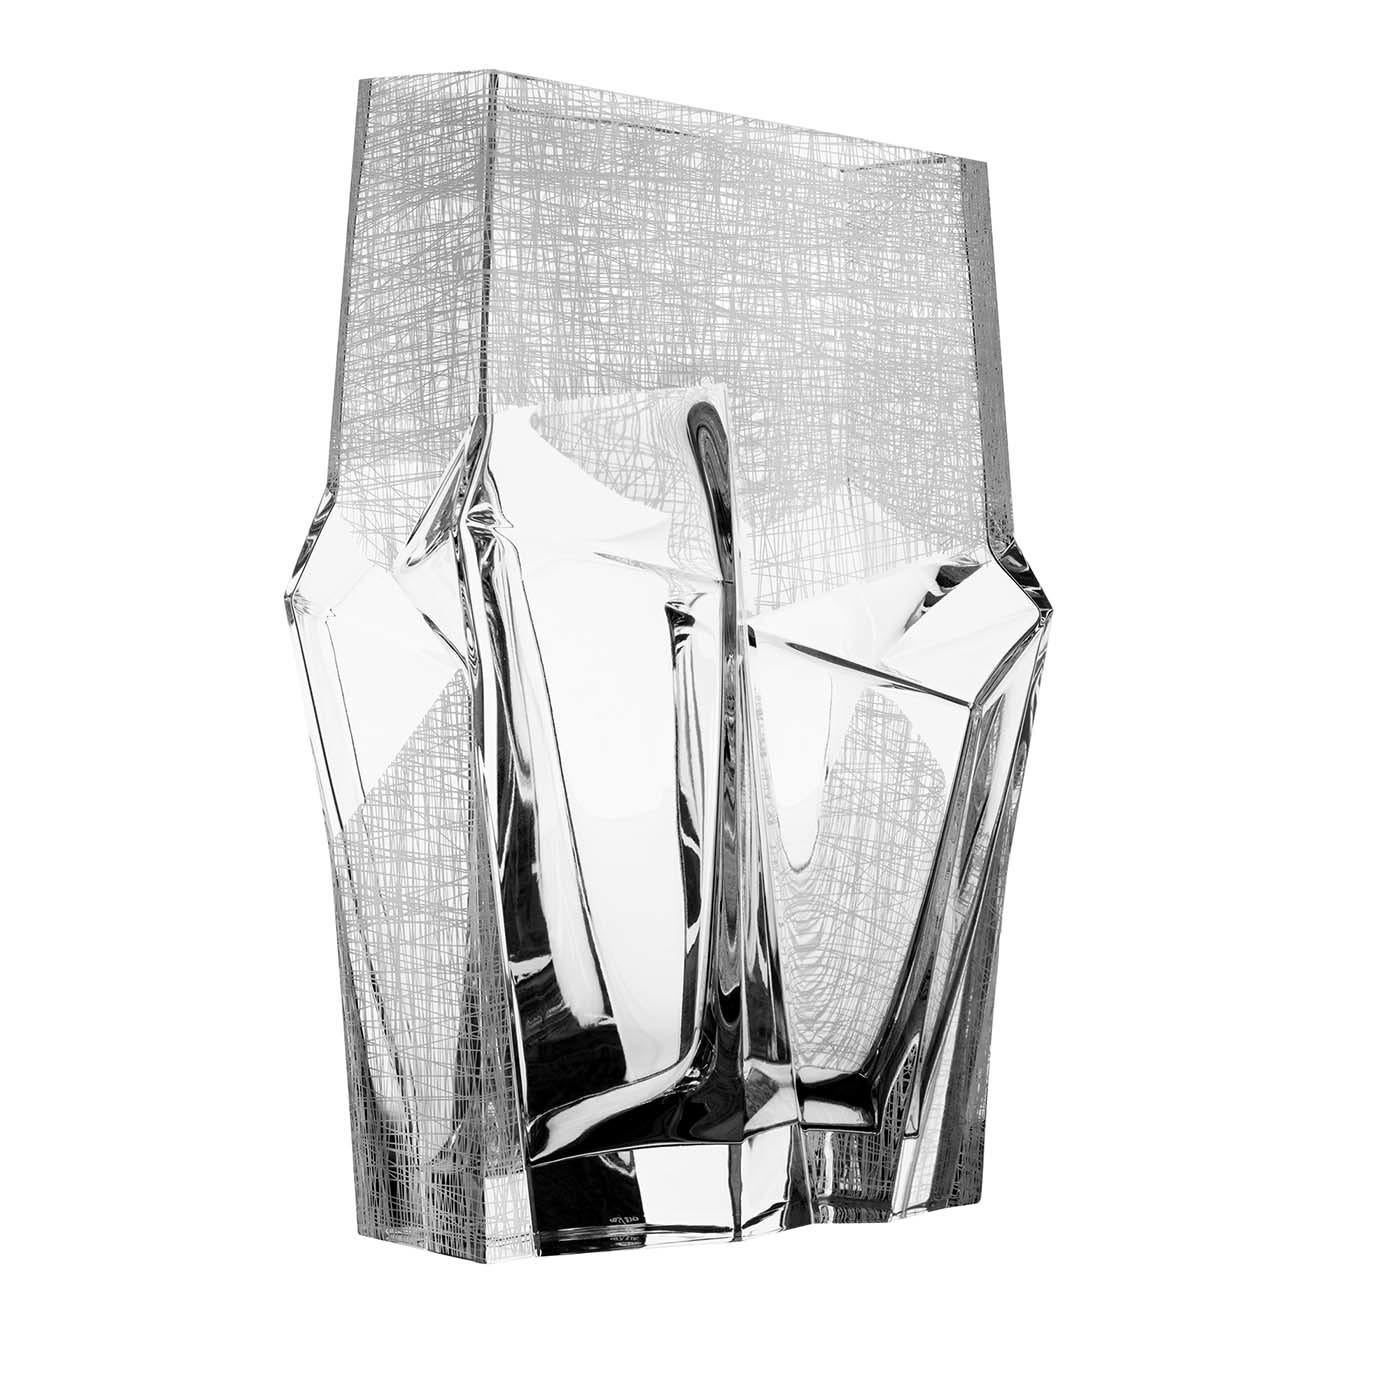 Faisant partie d'une édition limitée, ce vase en cristal a la forme de l'emblématique vase Metropolis de Tondo Doni, inspiré de l'expressionnisme et disponible également en vert et en noir. Ici dans une version transparente, les volumes